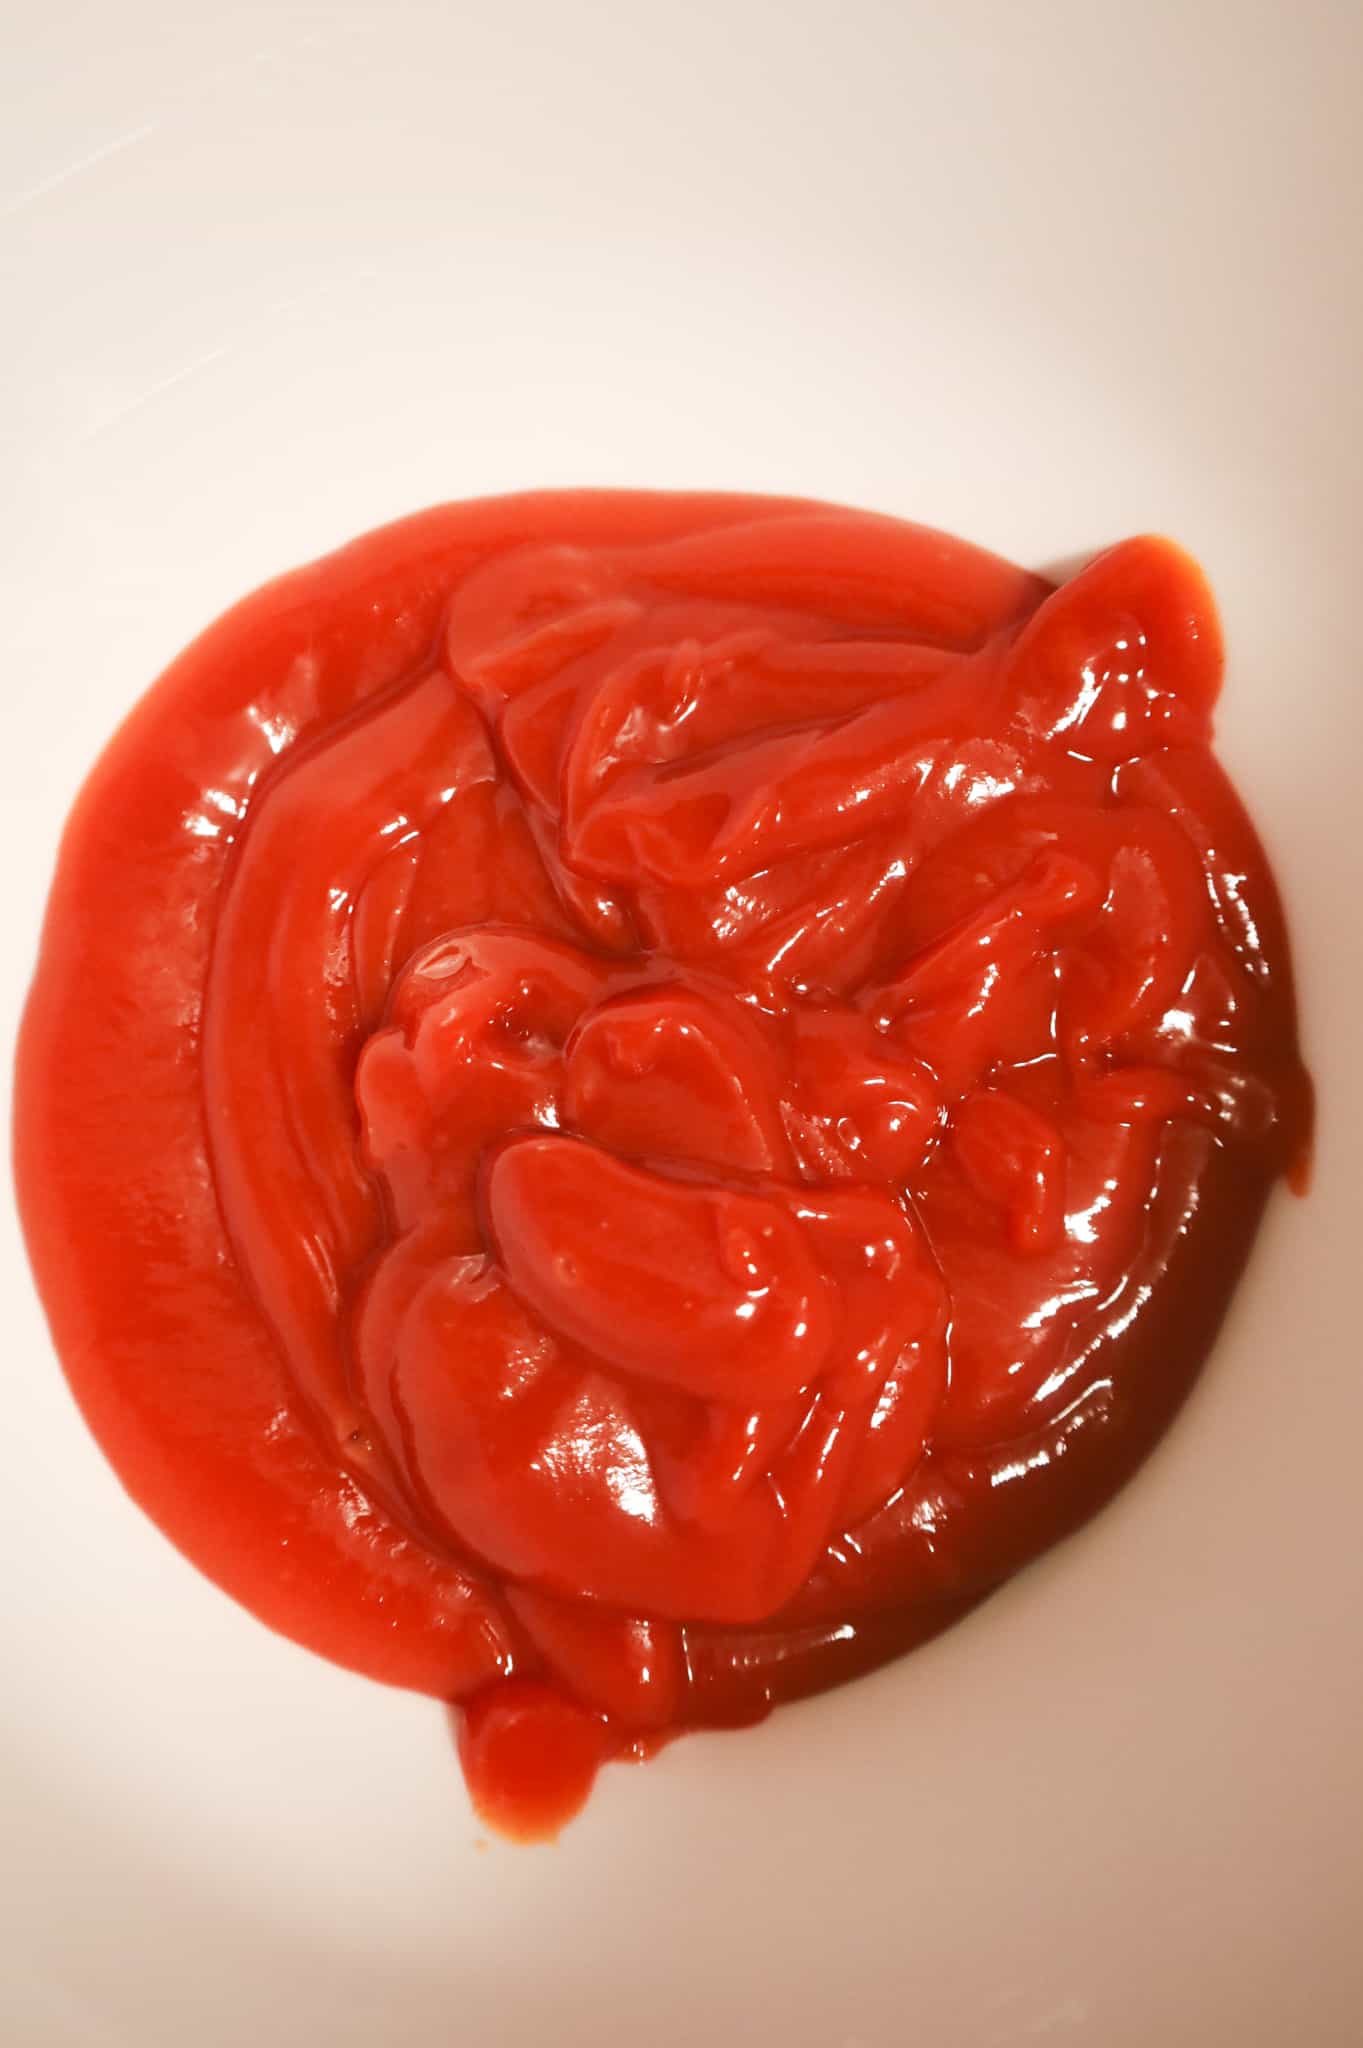 ketchup in a mixing bowl